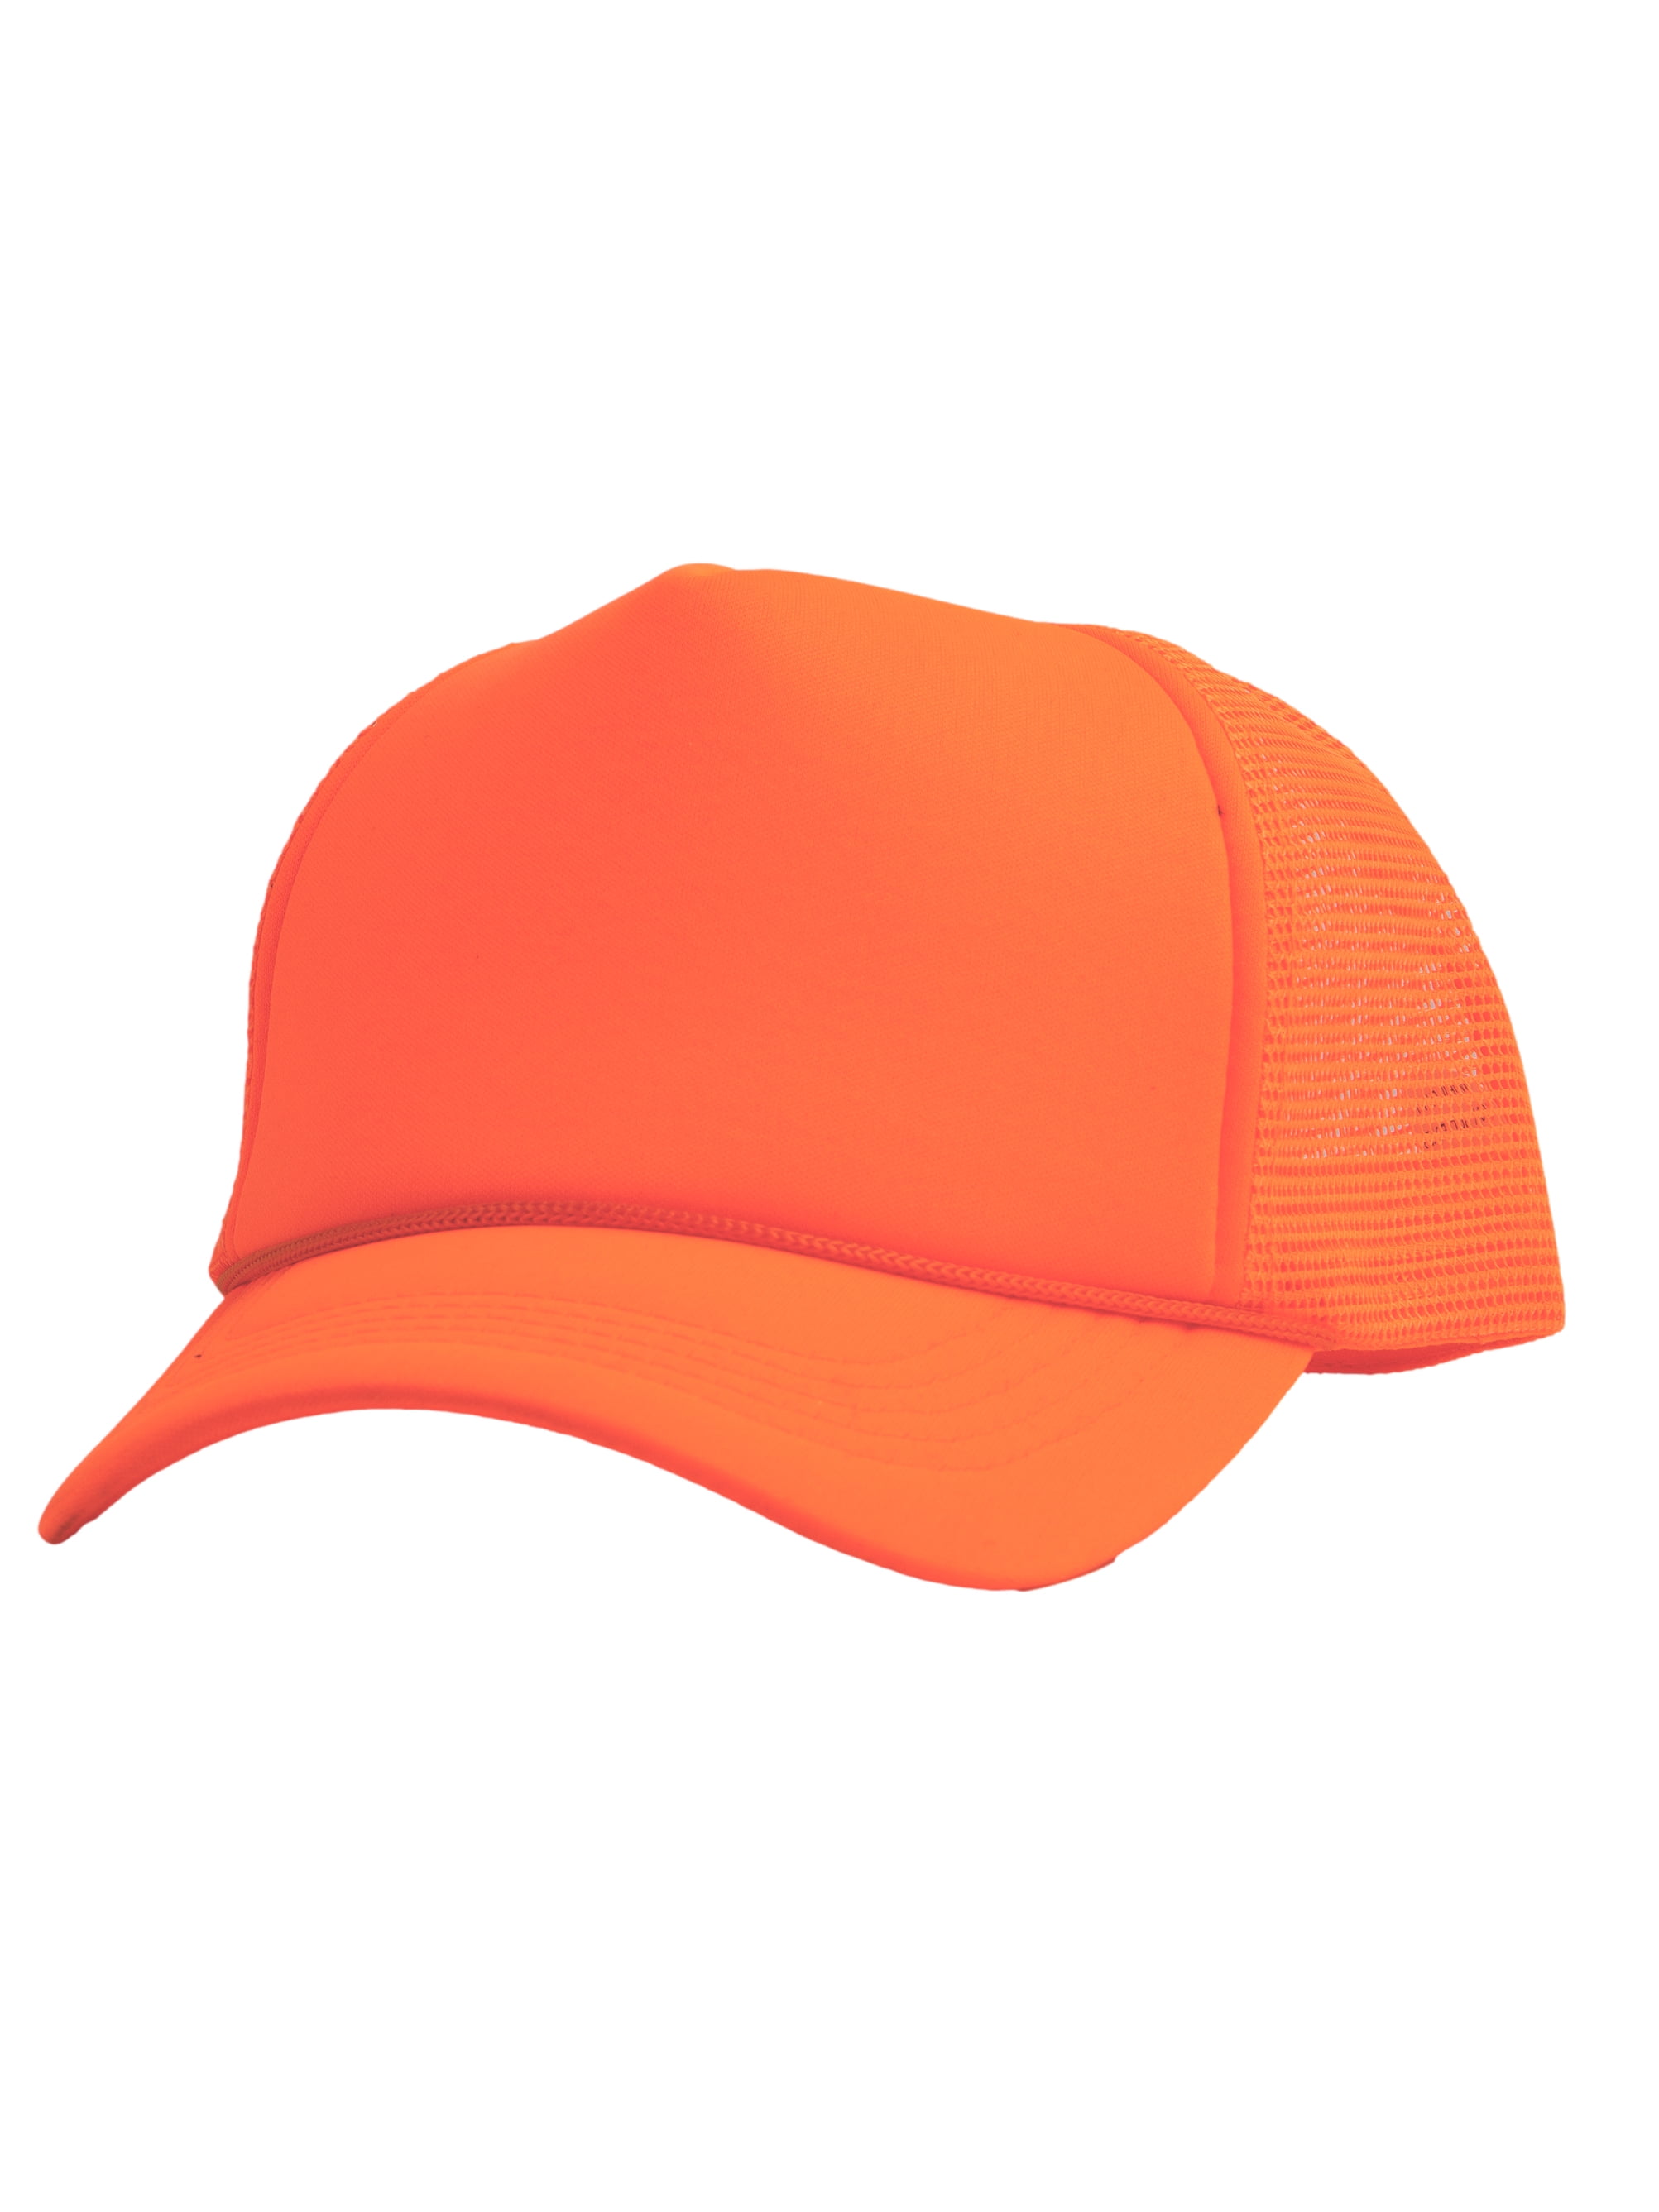 Trucker Trucker Mesh Top Headwear Snapback Orange Blank Foam Neon Hat Mens Hats -